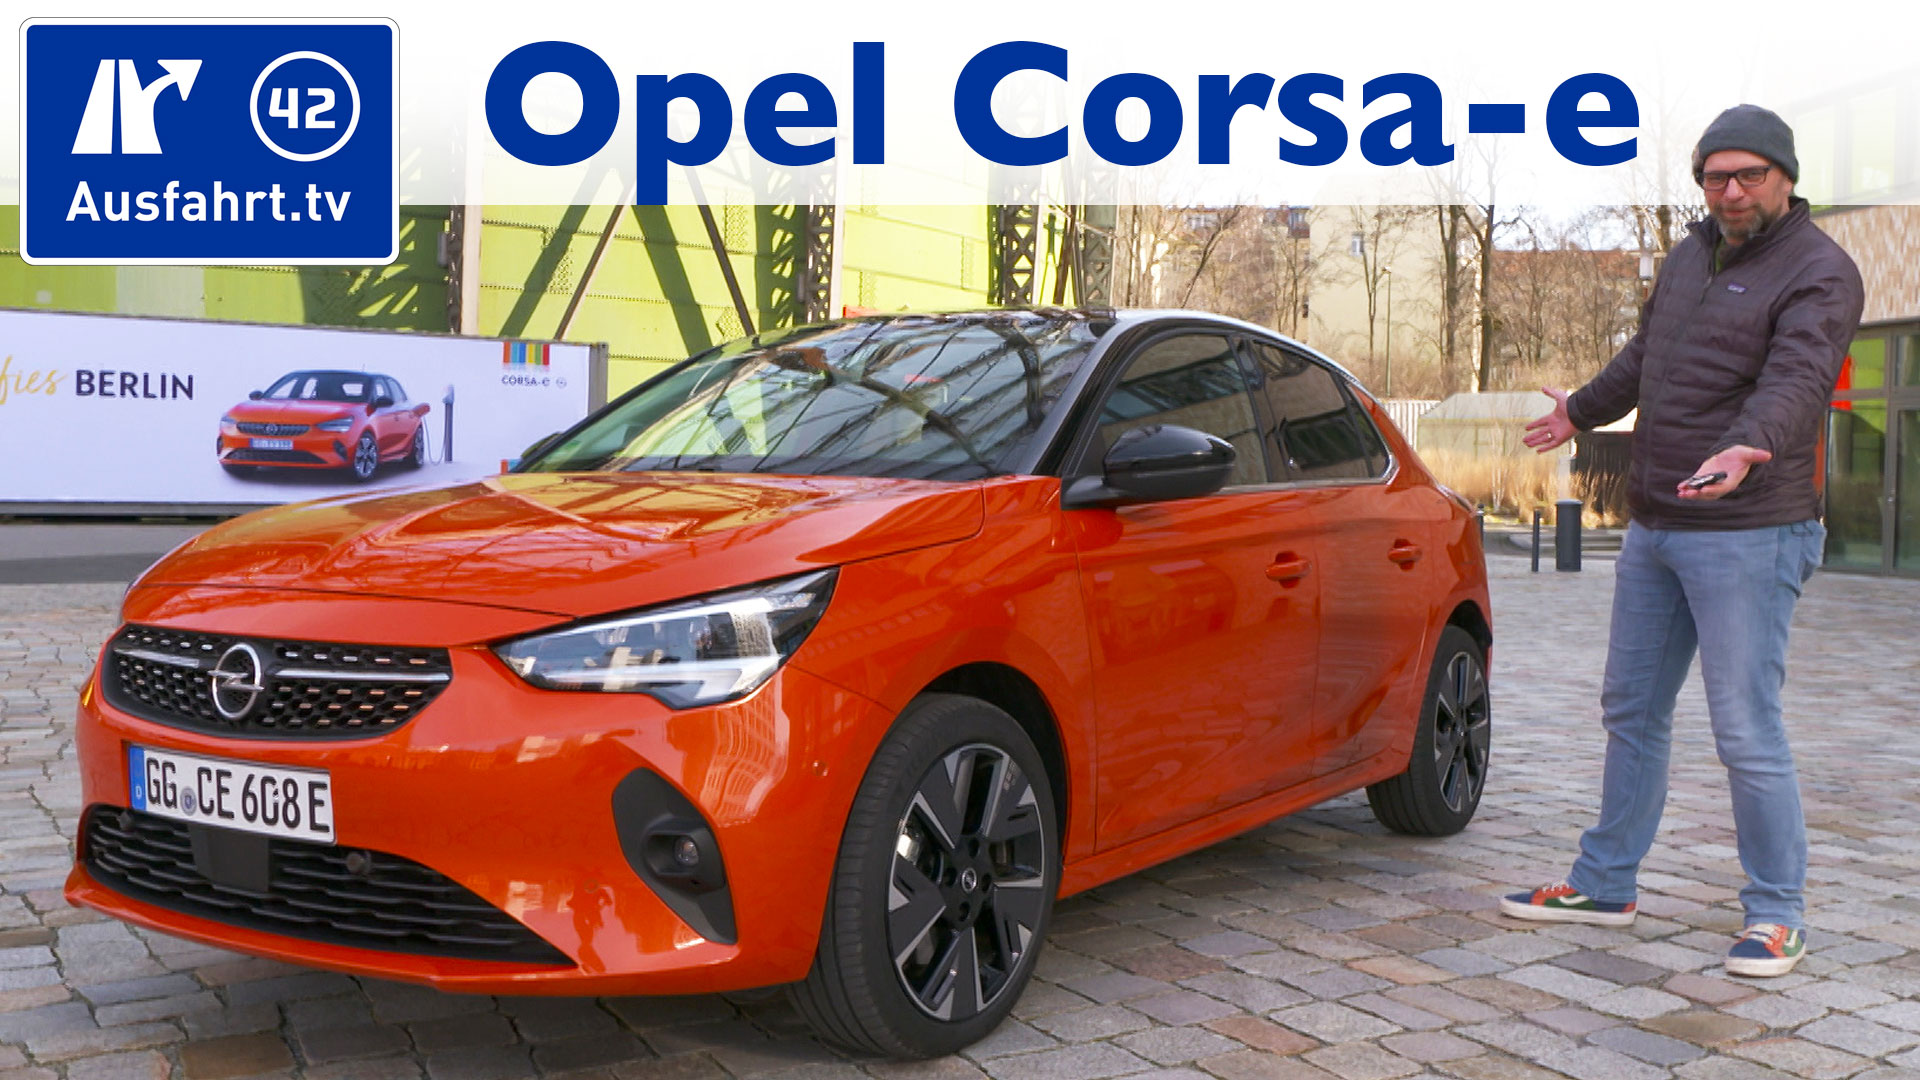 Opel Corsa E First Edition F Ausfahrt Tv